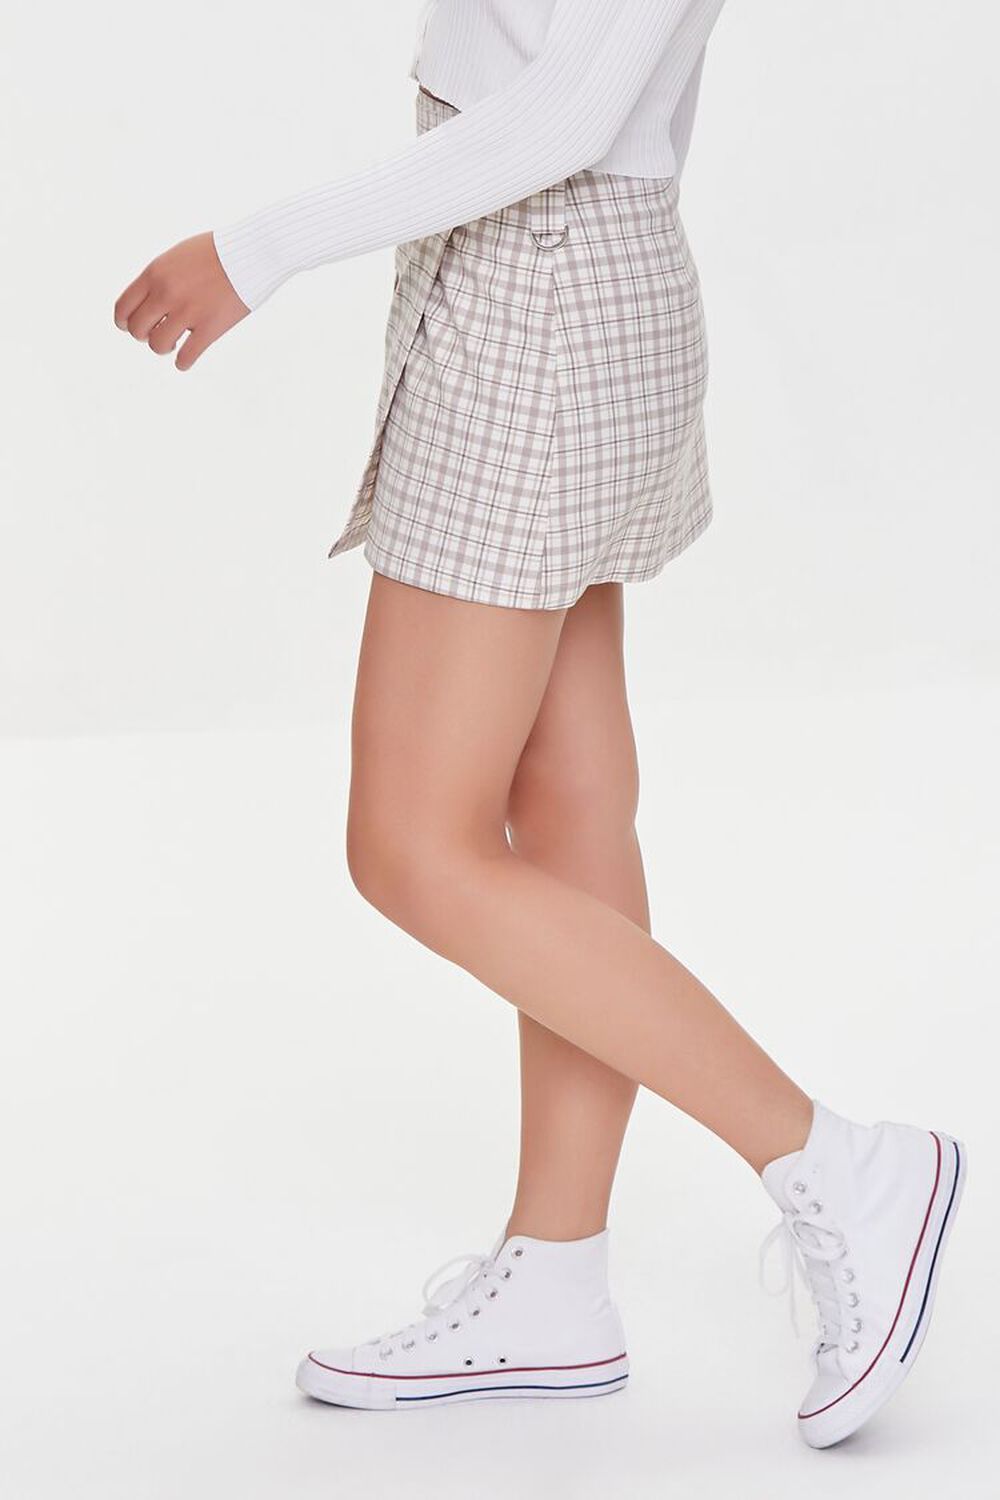 BEIGE/MULTI Plaid Mini Skirt, image 3